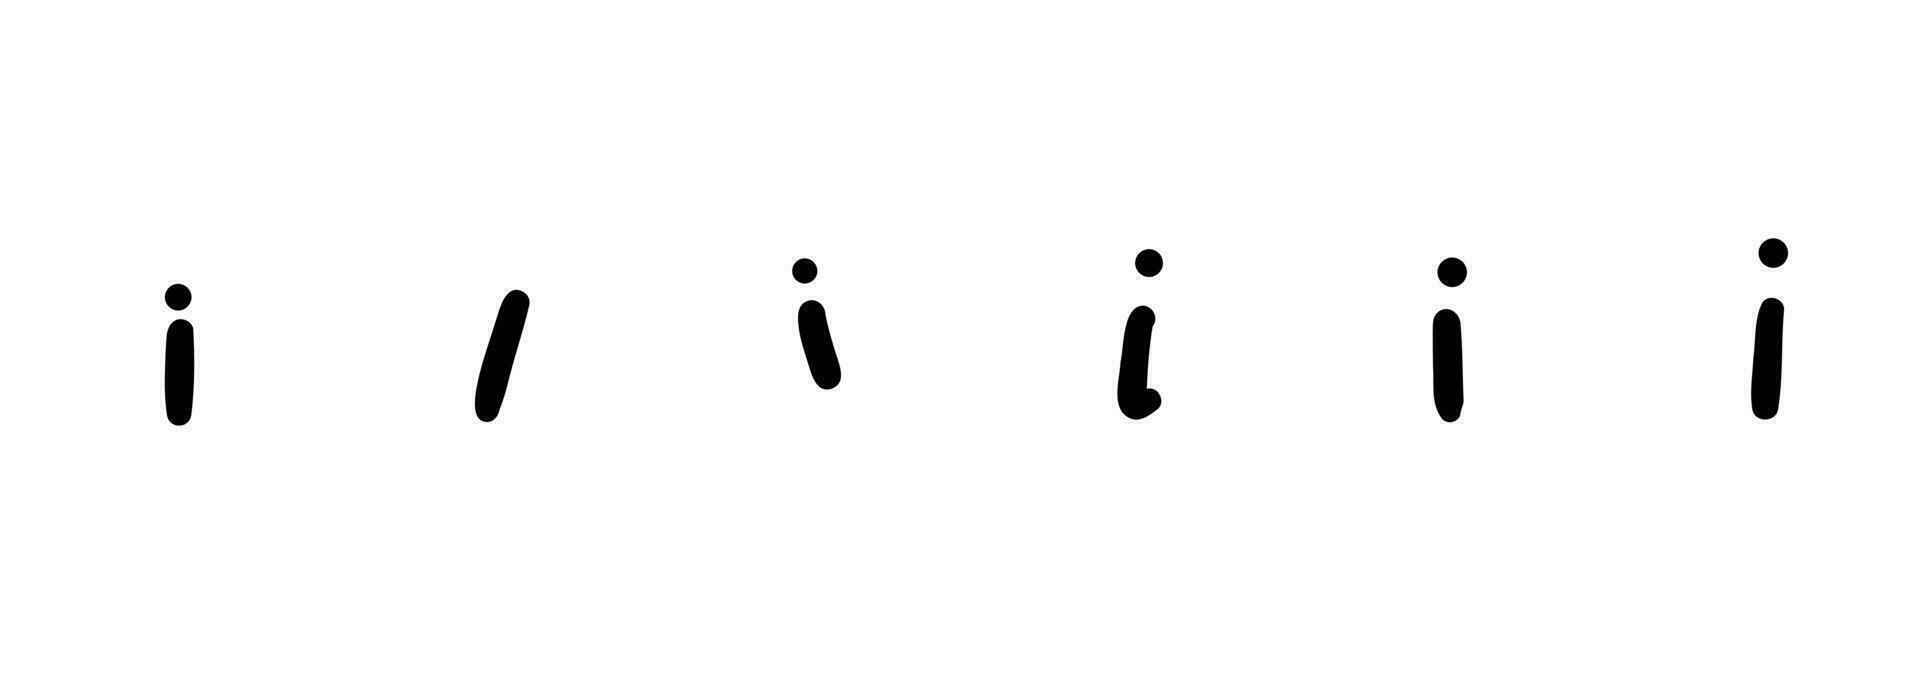 Escribiendo negro Inglés latín a B C alfabeto letra símbolo. vector ilustración en mano dibujado dibujos animados garabatear estilo aislado en blanco antecedentes. para aprendiendo, logo, niños libro, tarjeta, decorando